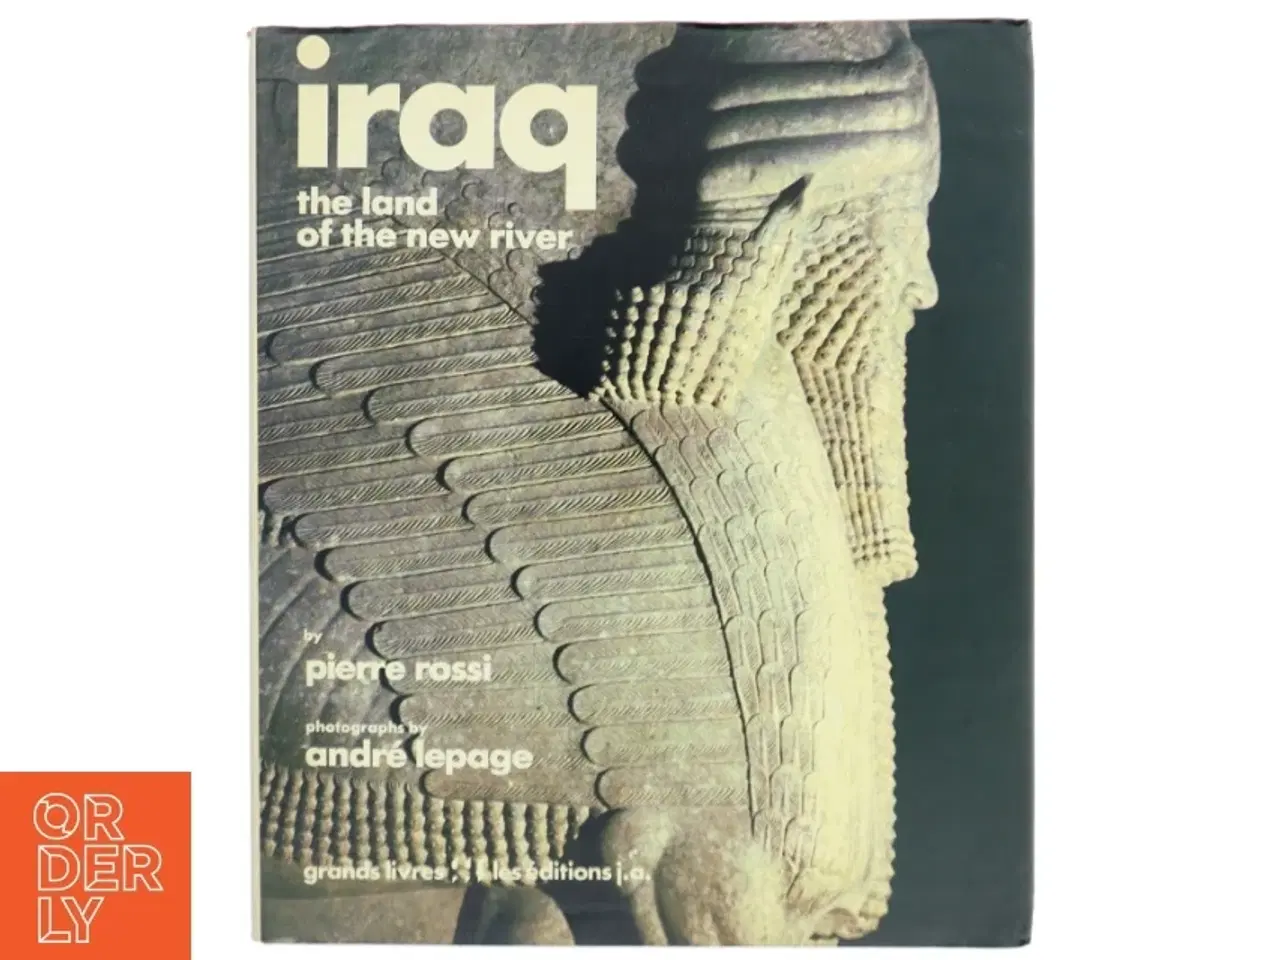 Billede 1 - Bogen 'Iraq: The land of the new river' af Pierre Rossi og fotografier af Andre Lepage.